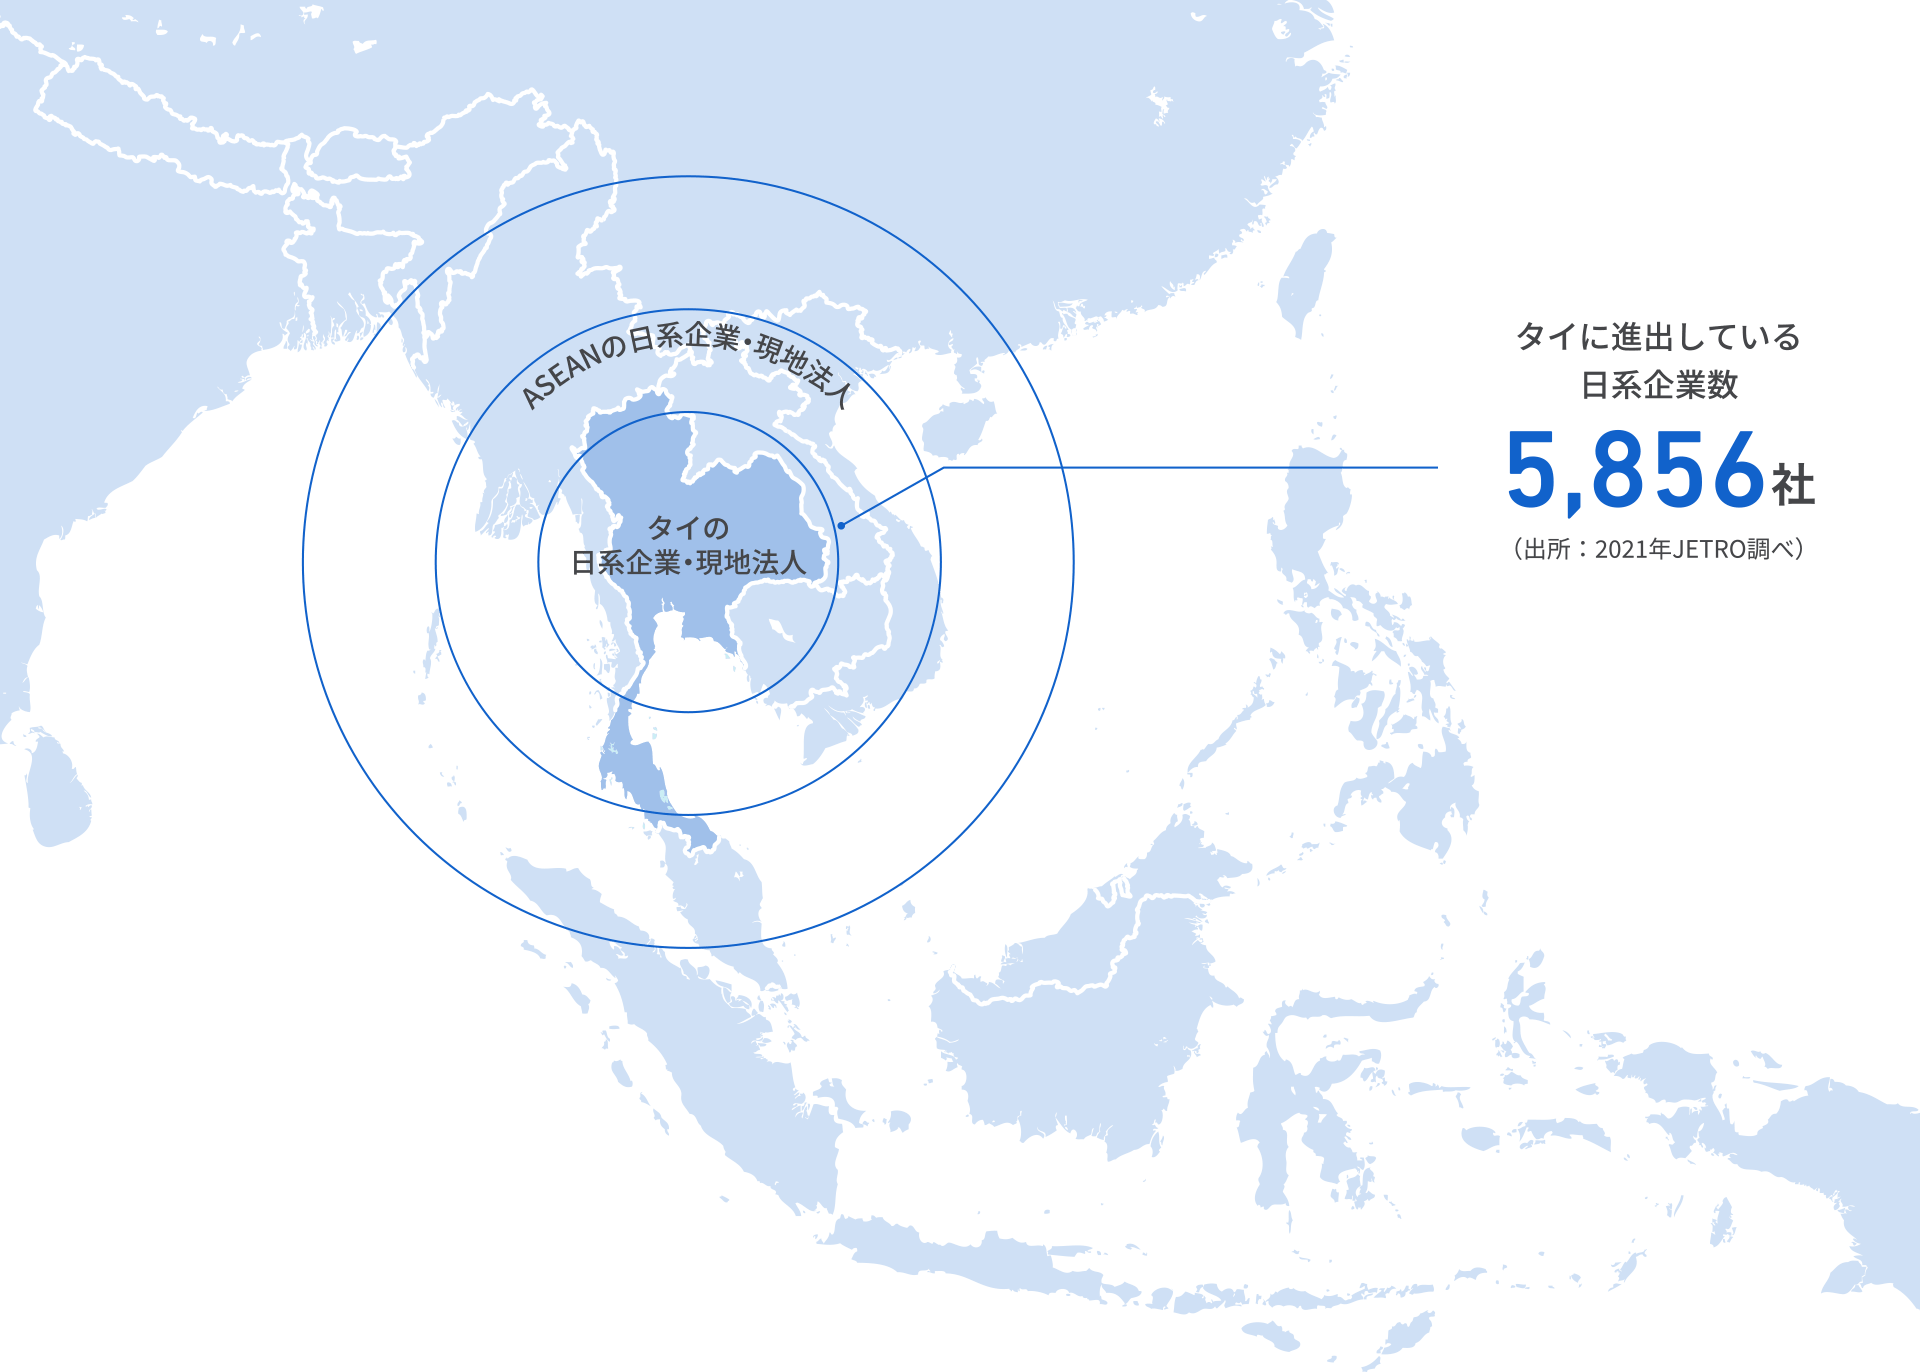 タイに進出している日系企業数 5,856社